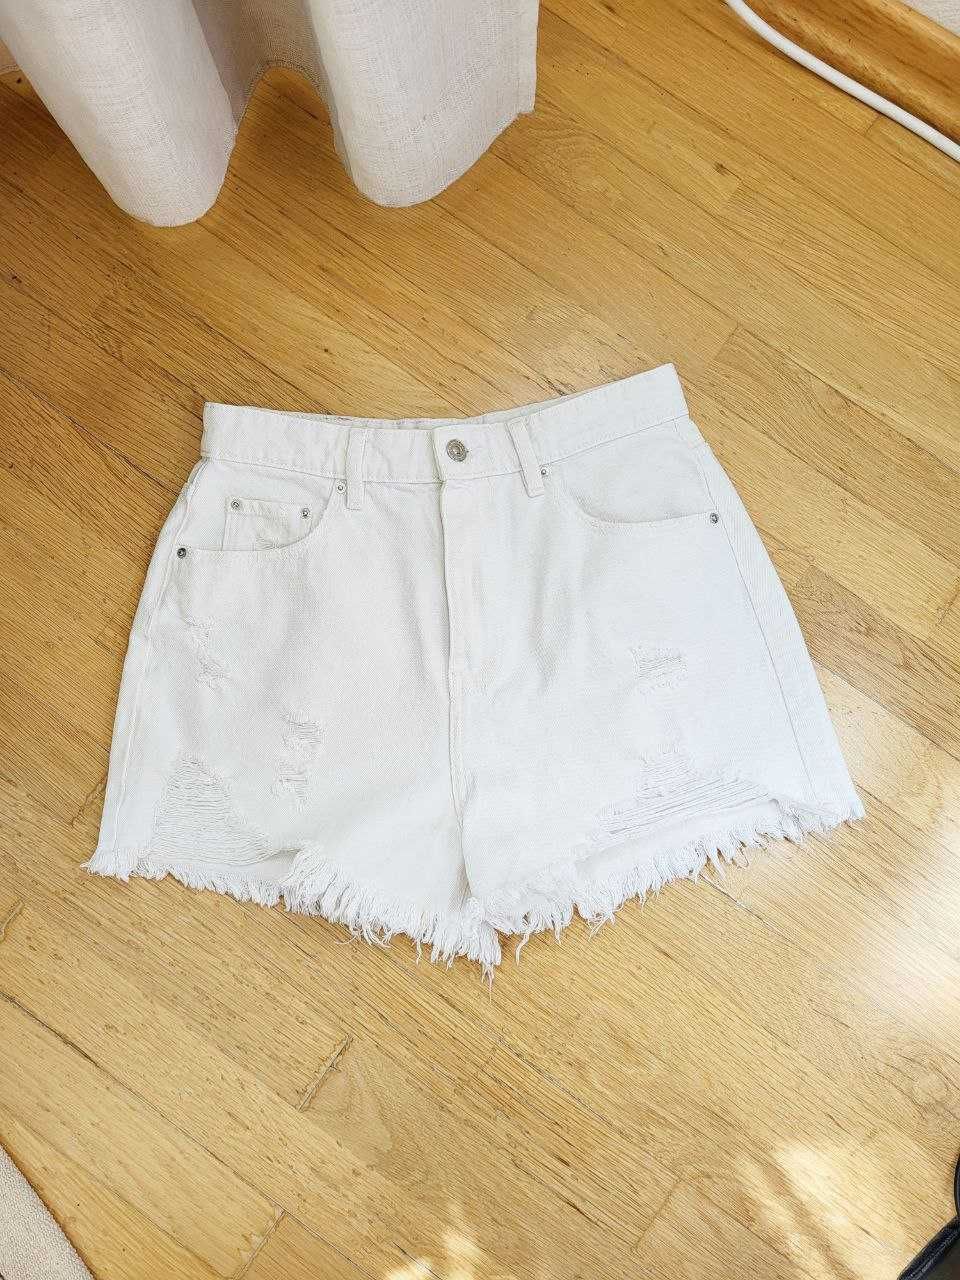 Белые короткие джинсовые шорты летние женские стильные актуальные